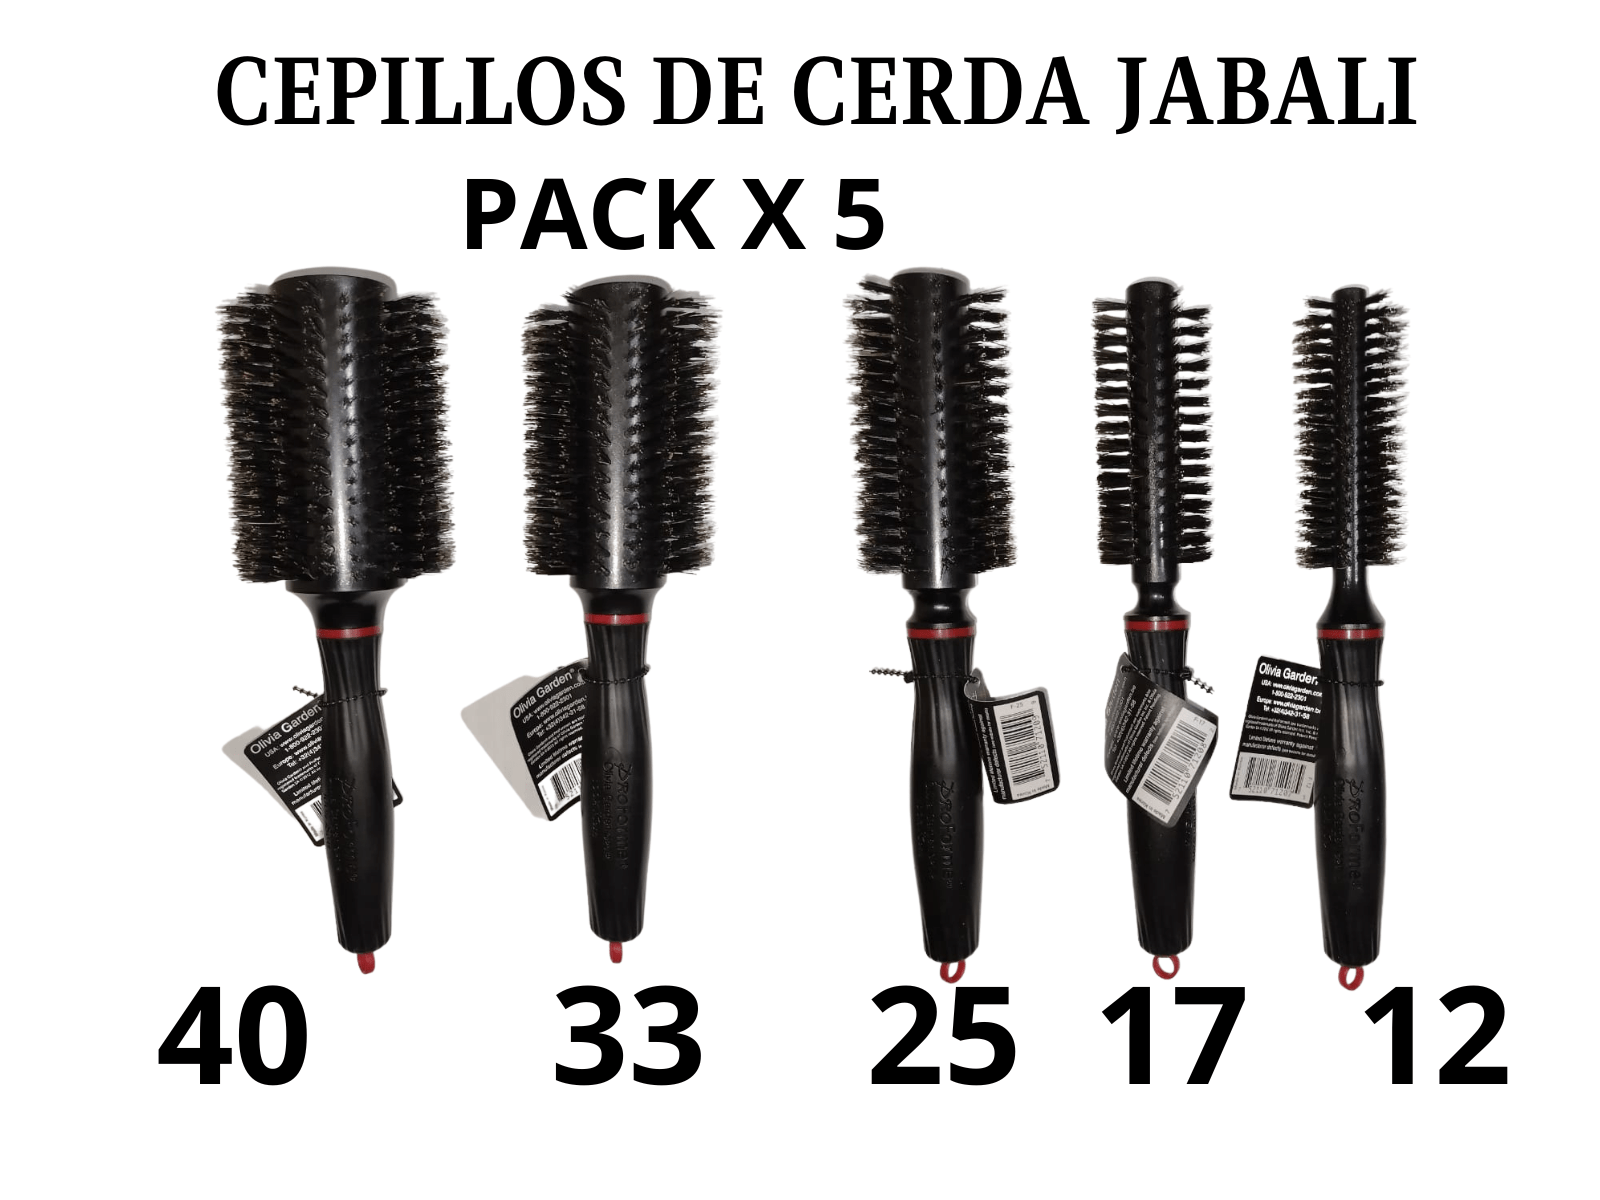 Cepillo de Cerda de Jabali Pack x 5 Estilistas - Productos para Peluquería